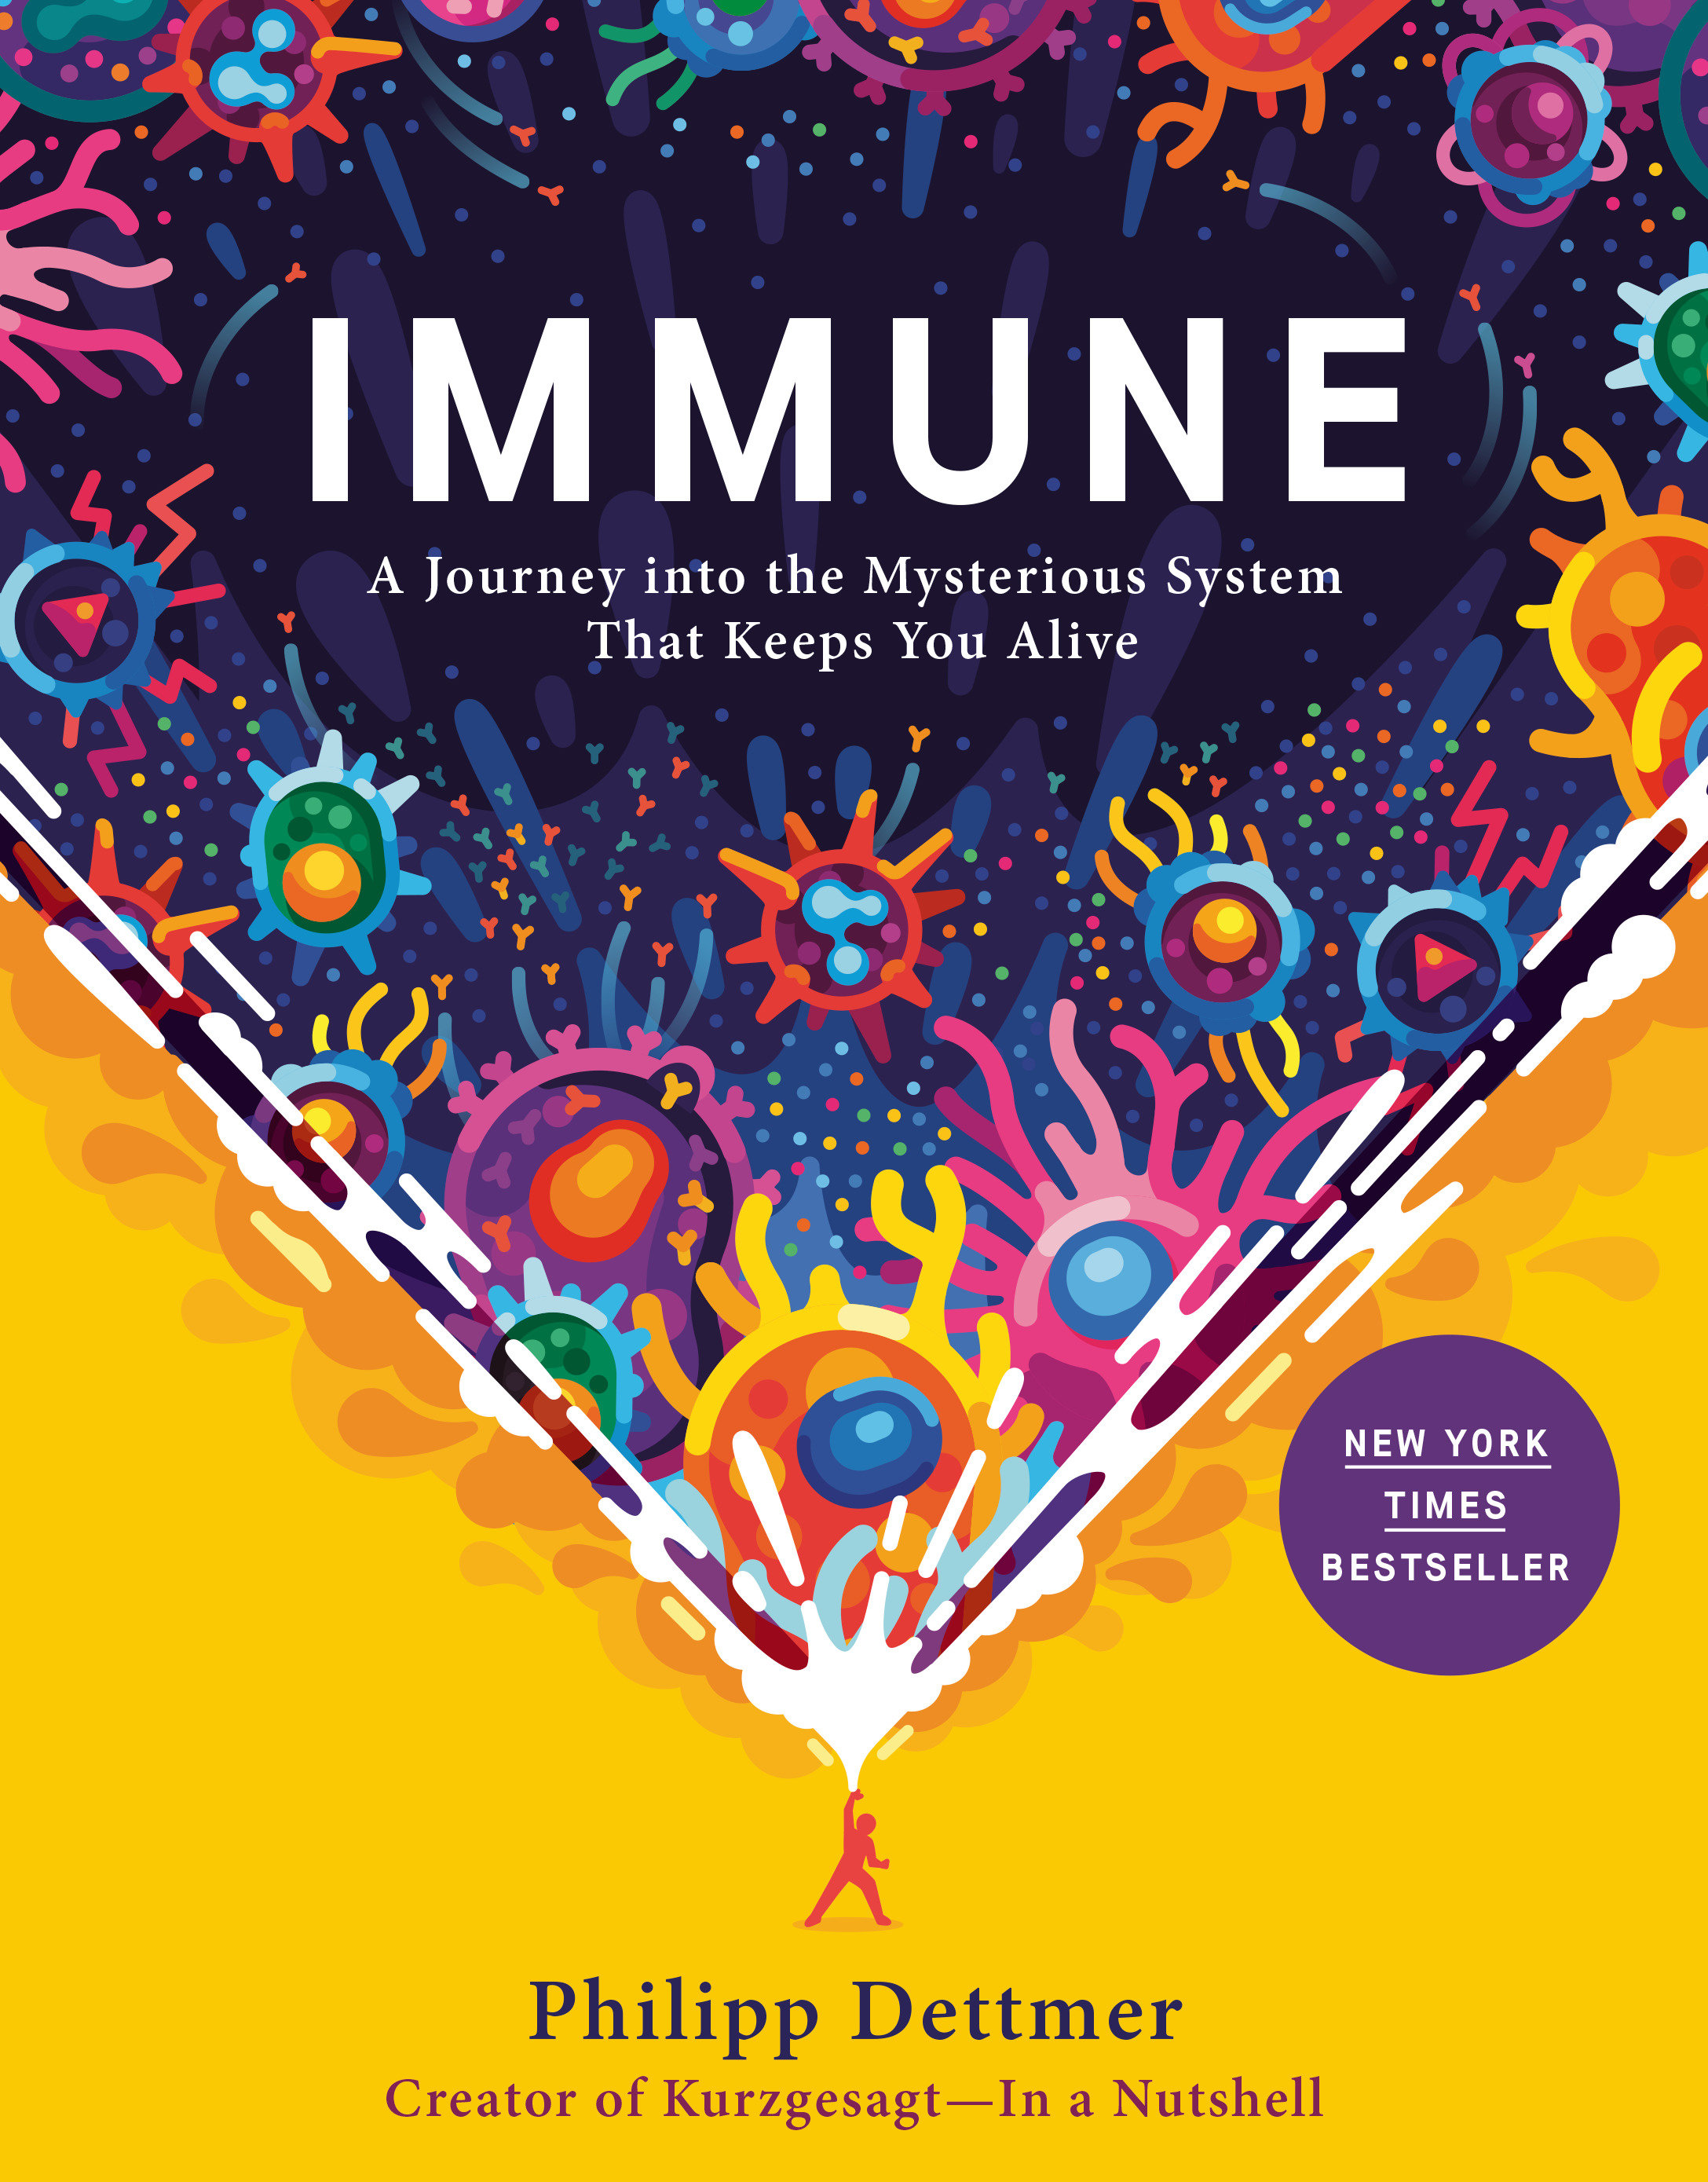 Immune (Hardcover Book)